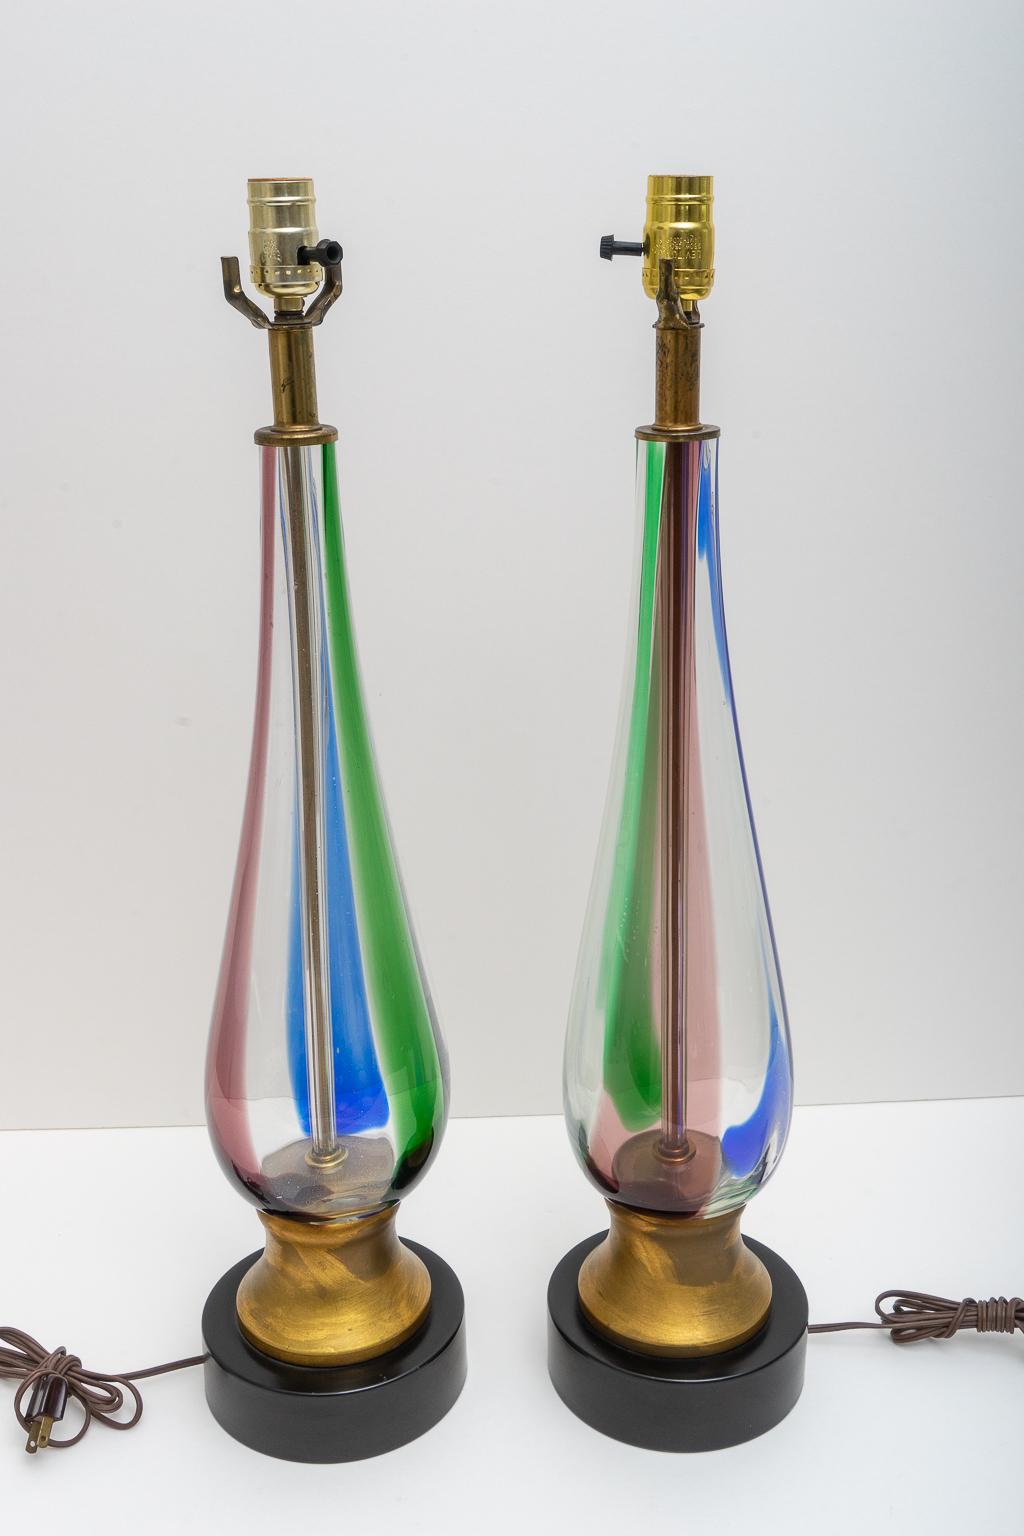 Cette paire élégante et chic de lampes de table Seguso en verre de Murano date des années 1970 et a été fabriquée pour Marbro Lamps.

Note : Les lampes ont été professionnellement recâblées et ont de nouvelles douilles.